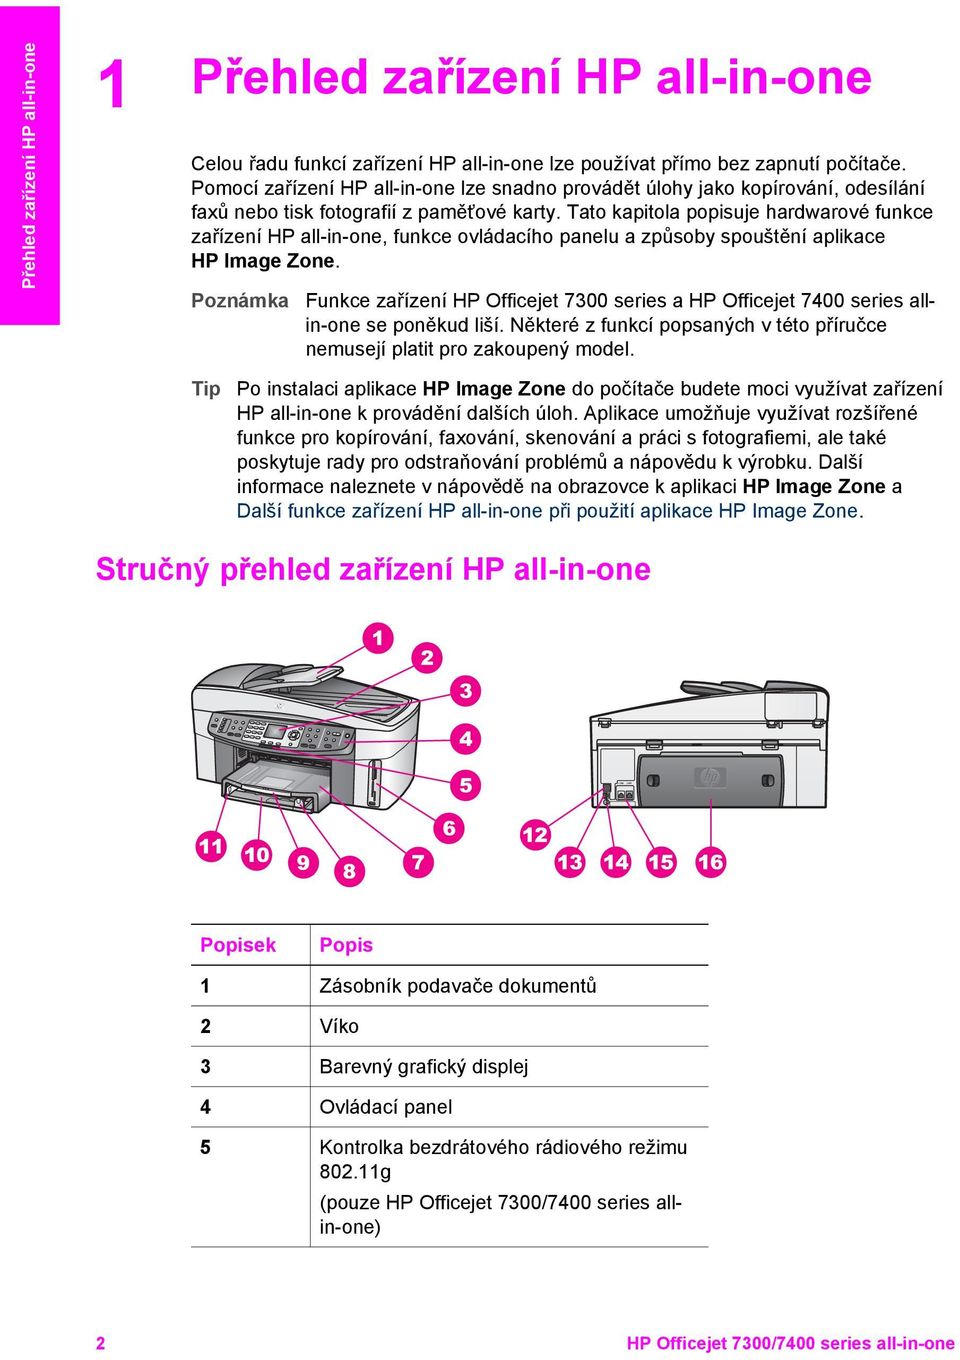 Tato kapitola popisuje hardwarové funkce zařízení HP all-in-one, funkce ovládacího panelu a způsoby spouštění aplikace HP Image Zone.